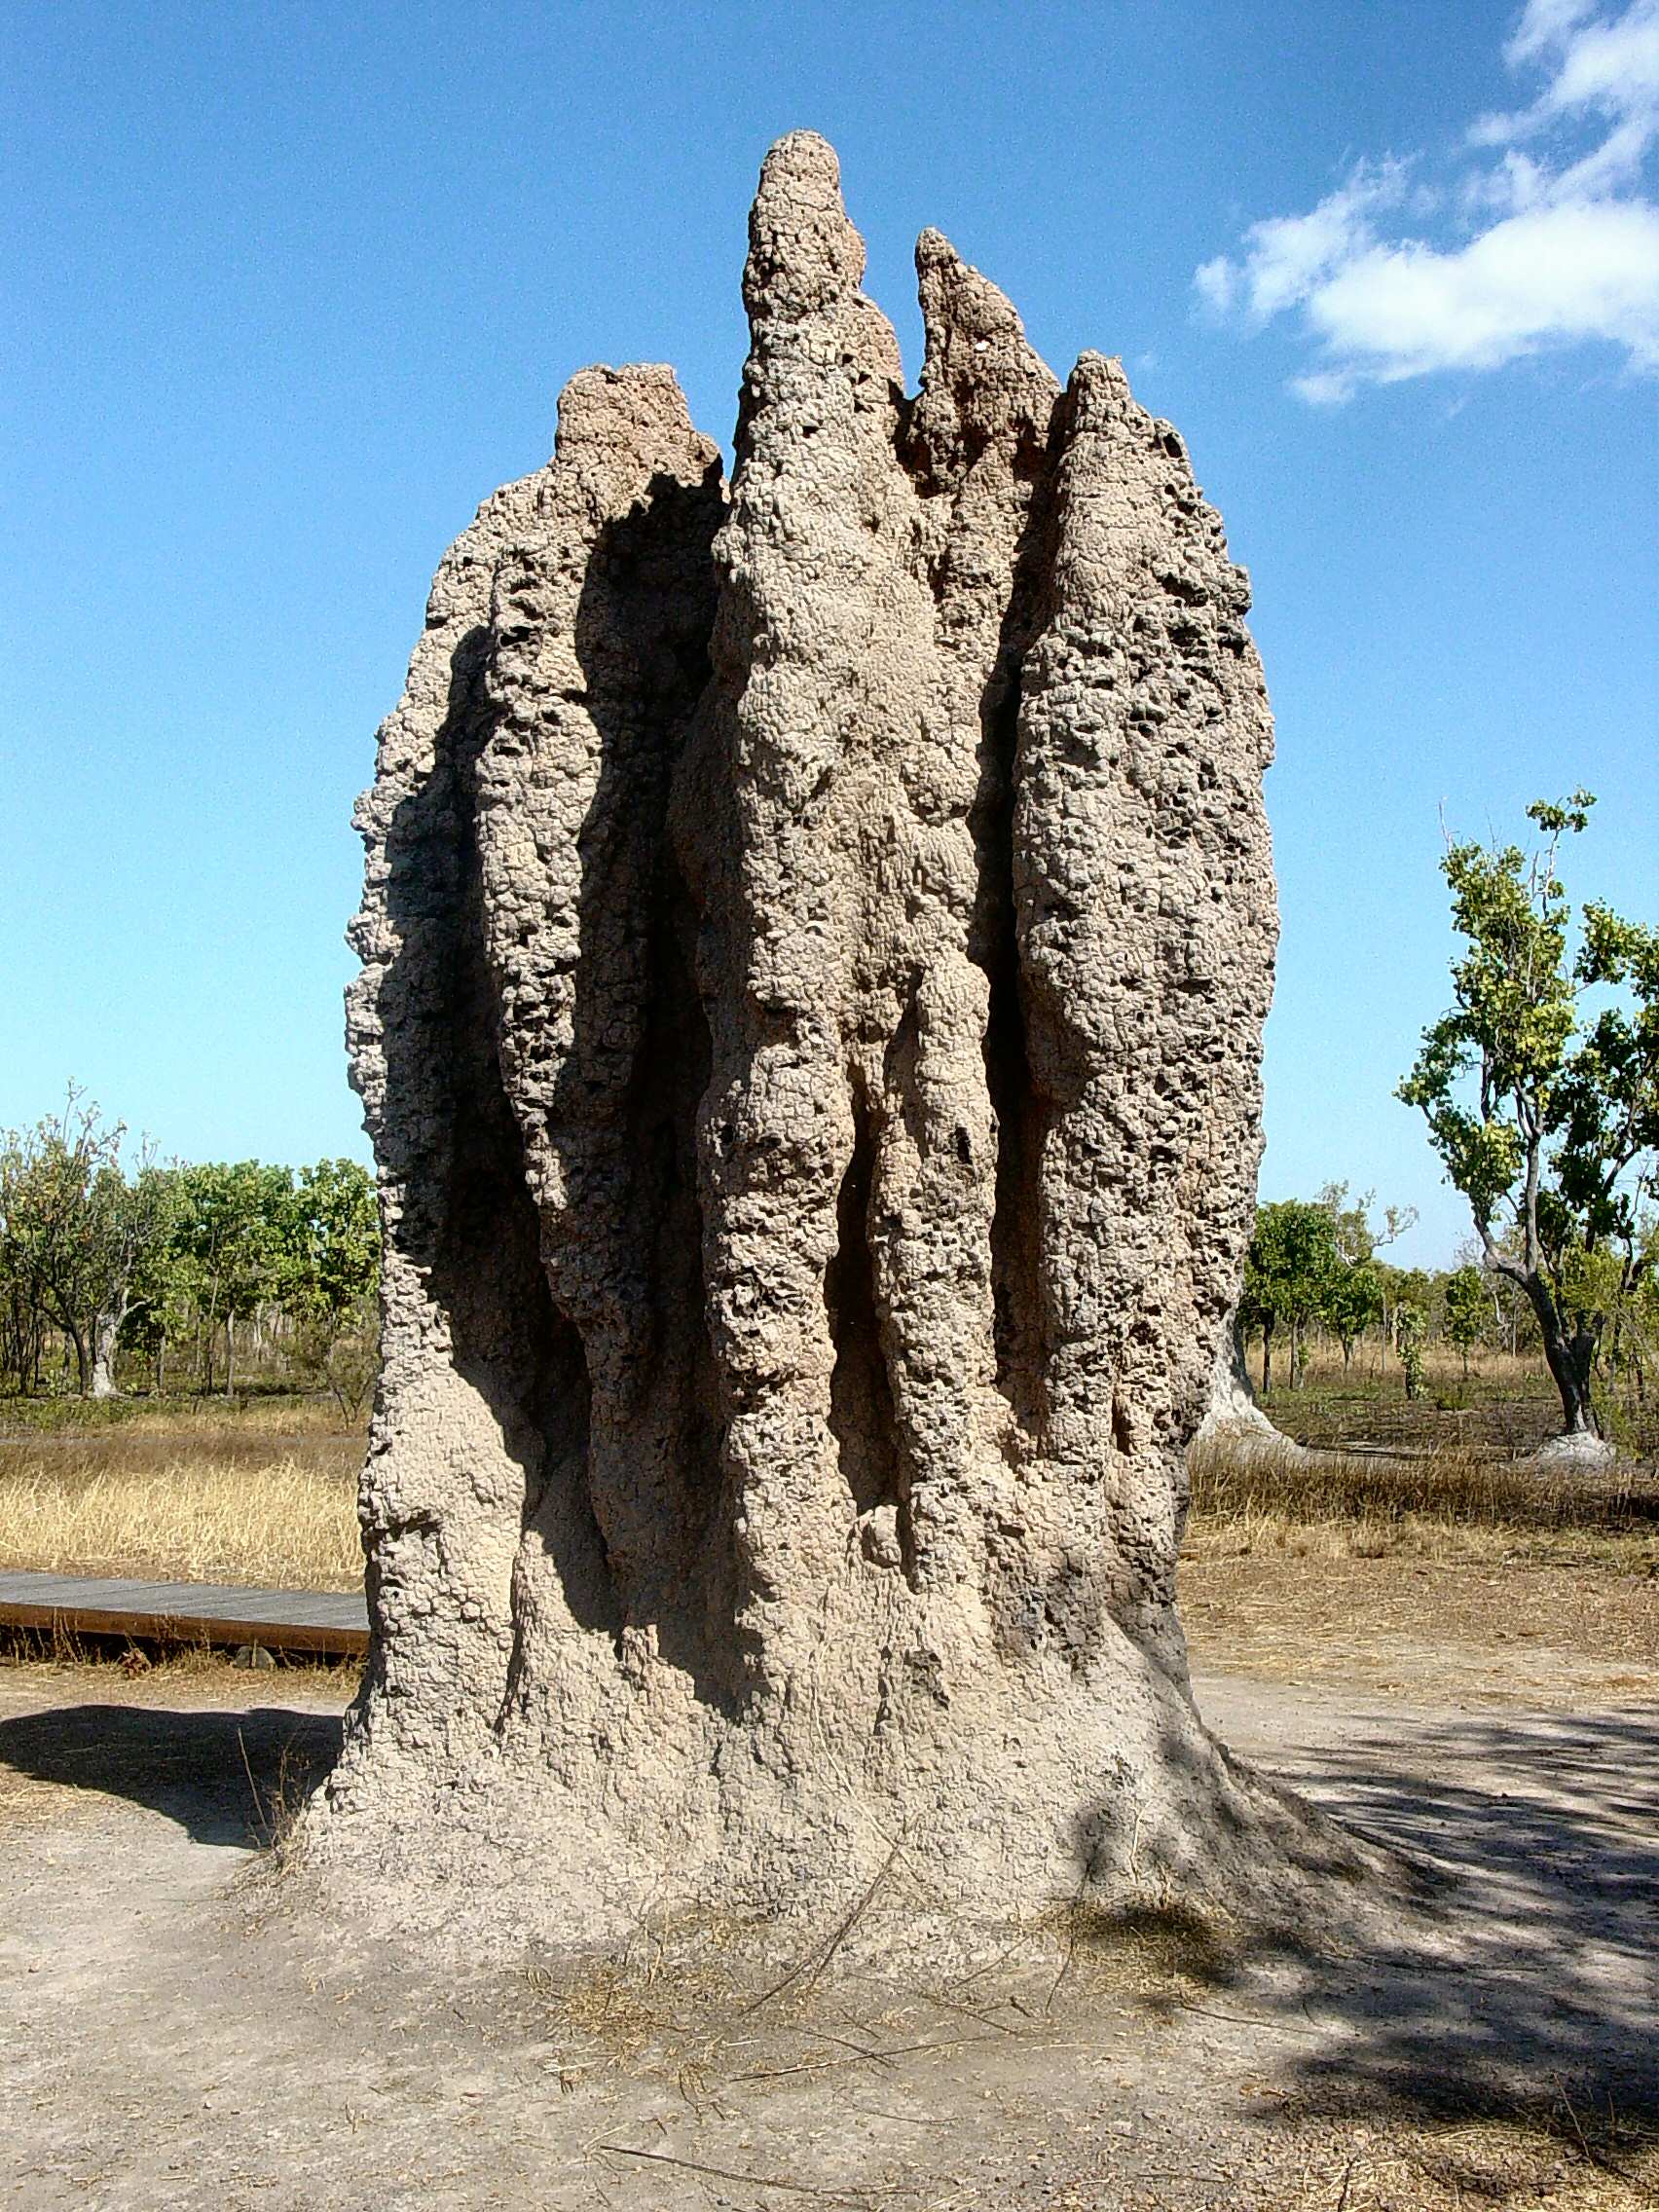 Imagen de un termitero/ “Termite Cathedral DSC03570”. Imagen: Yewenyi. Fuente: Disponible bajo la licencia CC BY-SA 3.0 vía Wikimedia Commons.